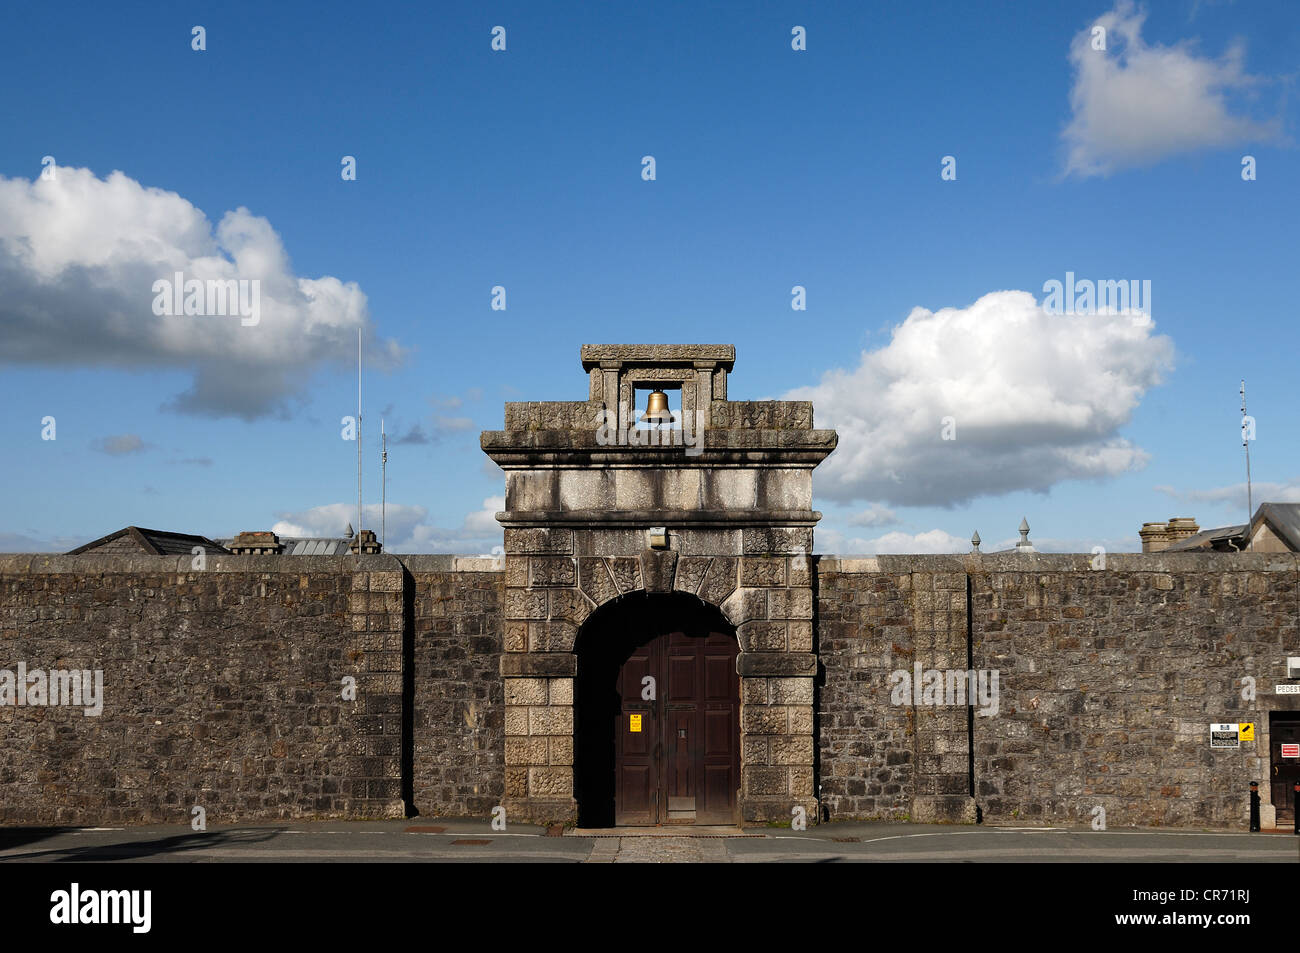 La prison de Dartmoor, porte d'entrée avec une cloche, construit entre 1806 et 1809, Princetown, Dartmoor, dans le Devon, Angleterre, Royaume-Uni Banque D'Images